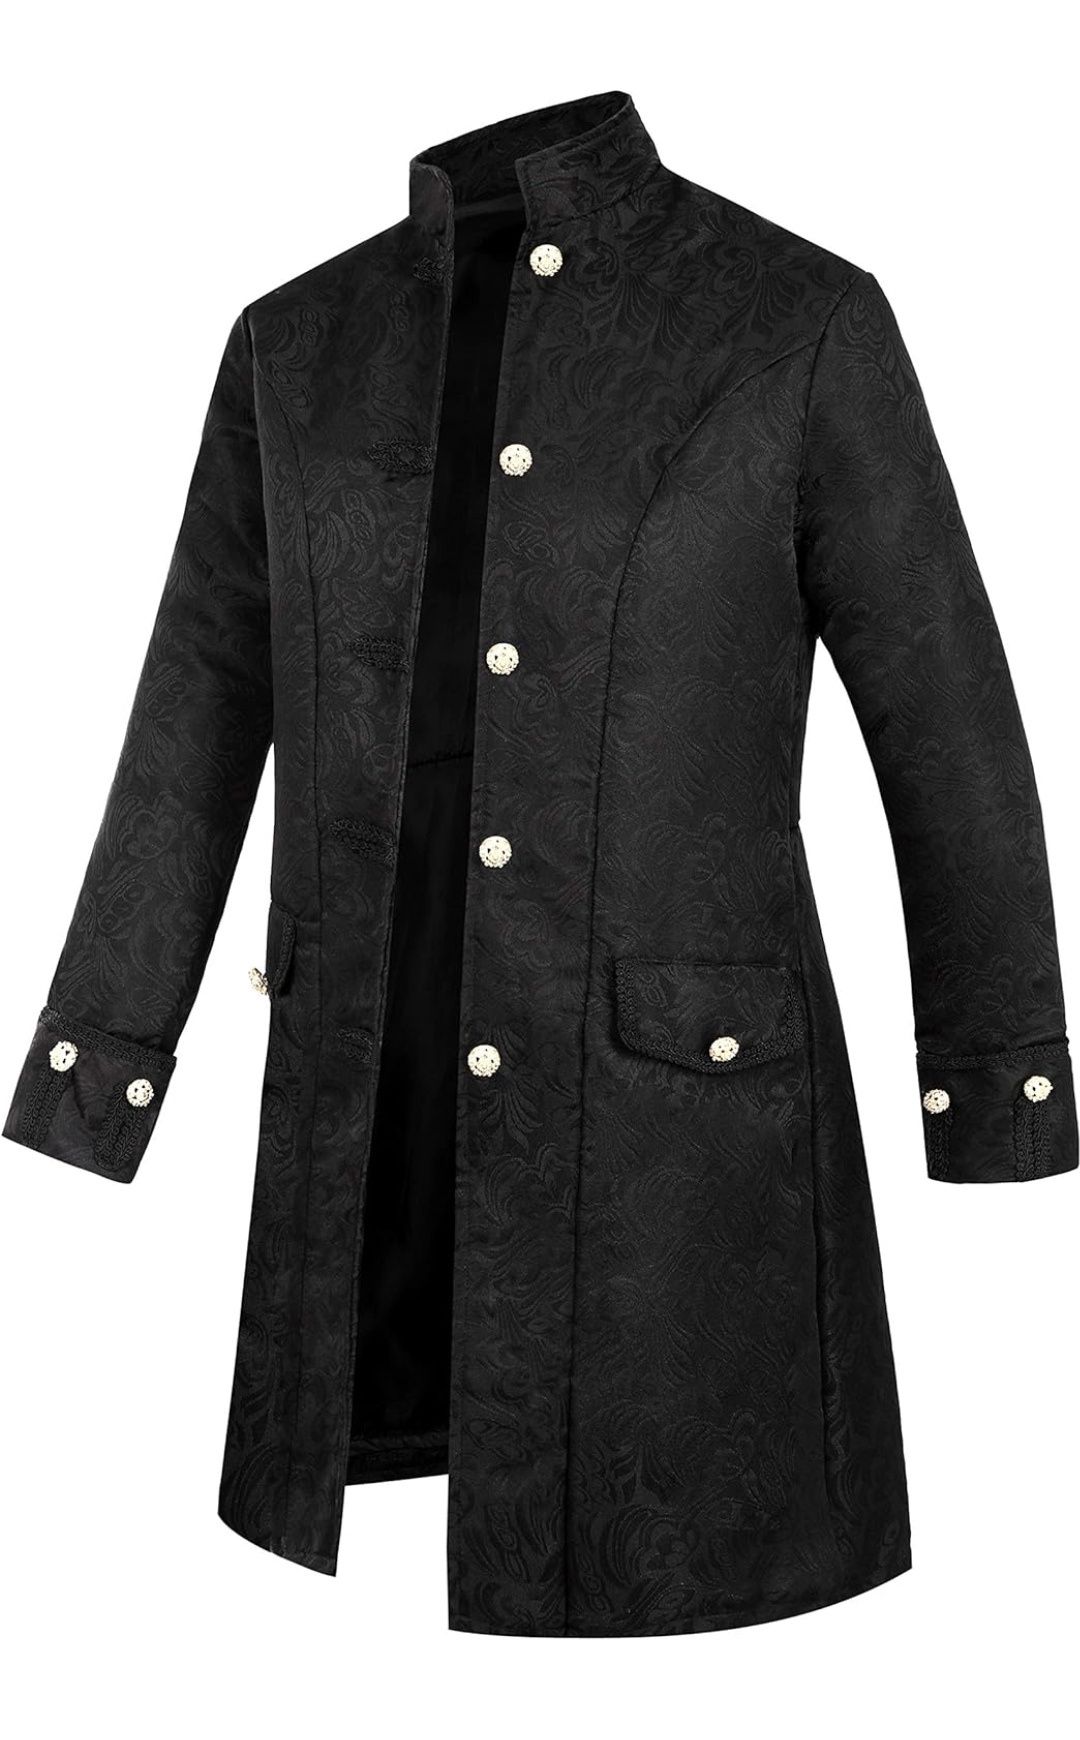 Rozm. MMęska gotycka Steampunk Vintage frak kurtka średniowieczny wikt